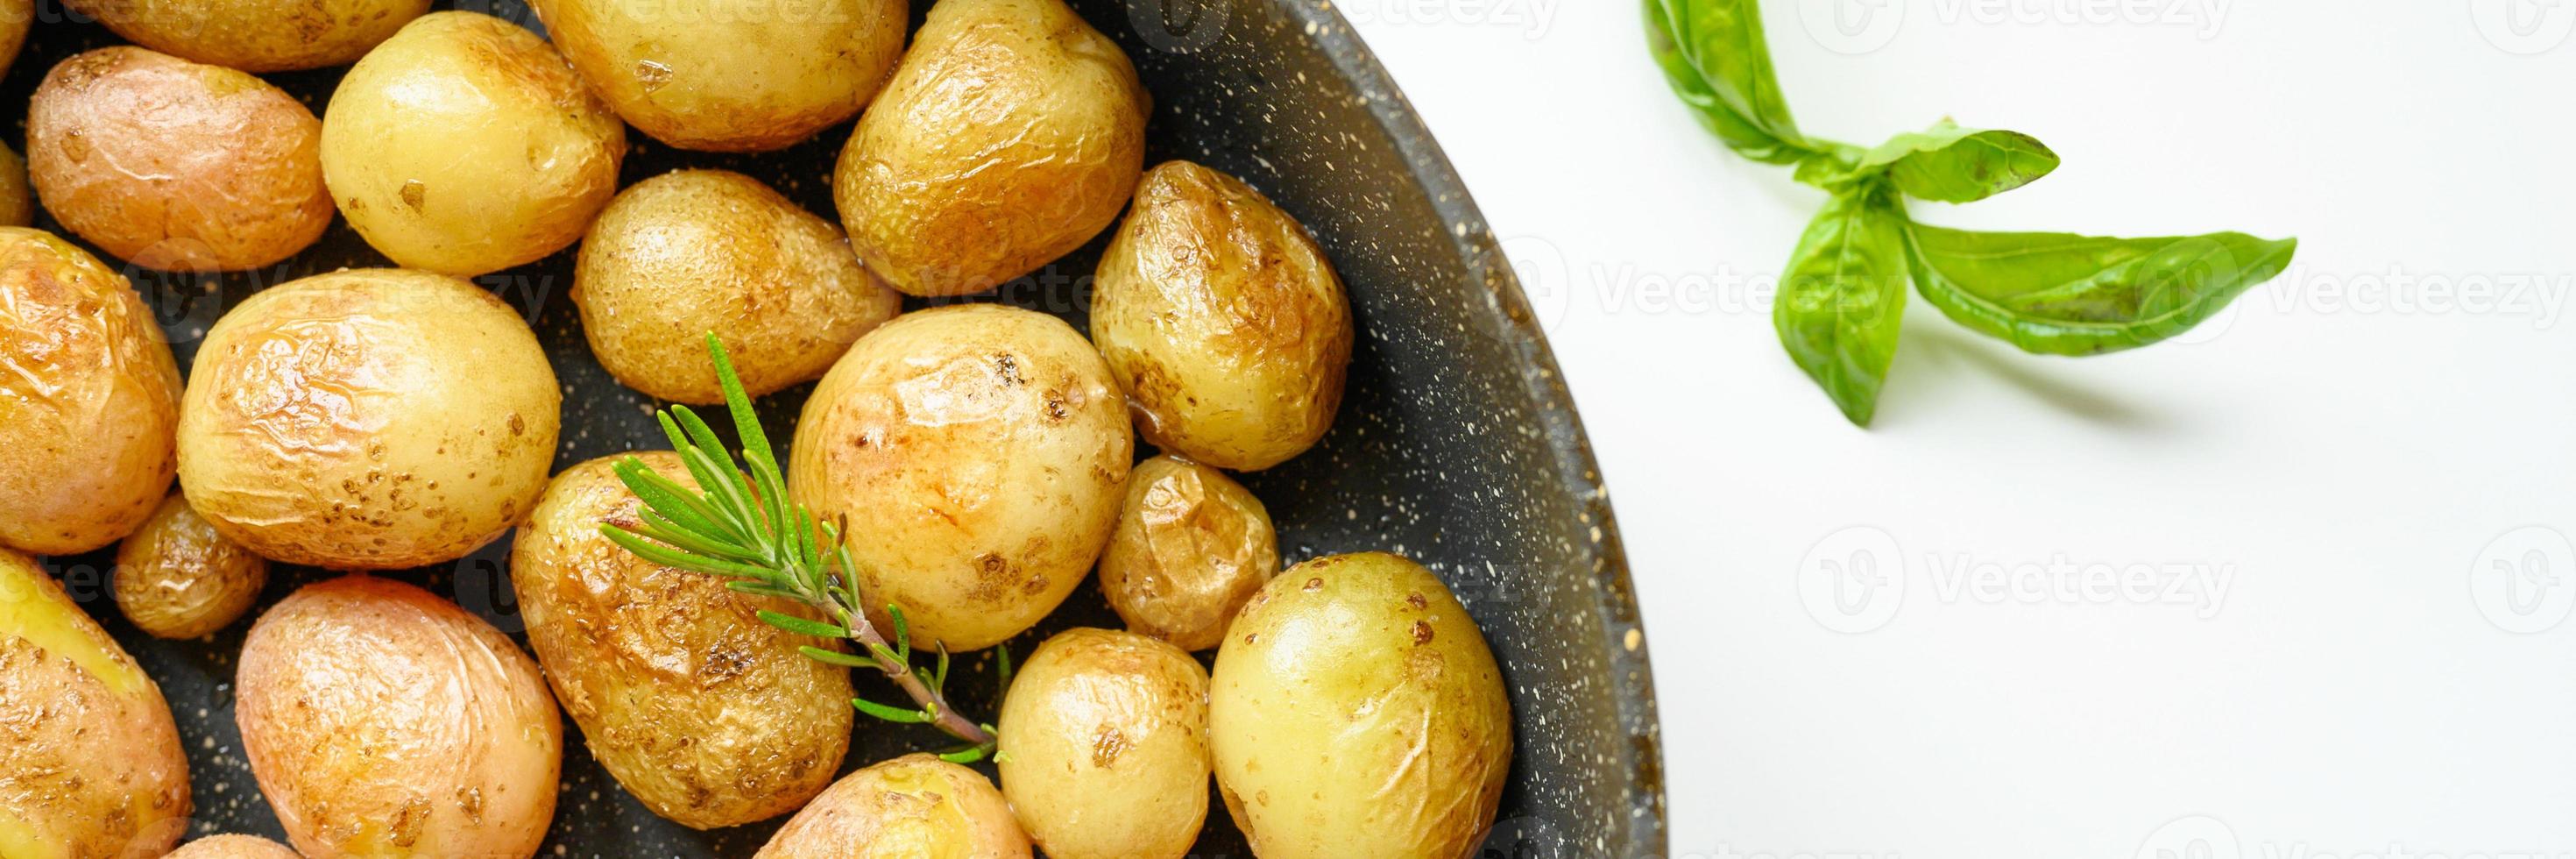 pommes de terre rôties dorées dans la peau photo